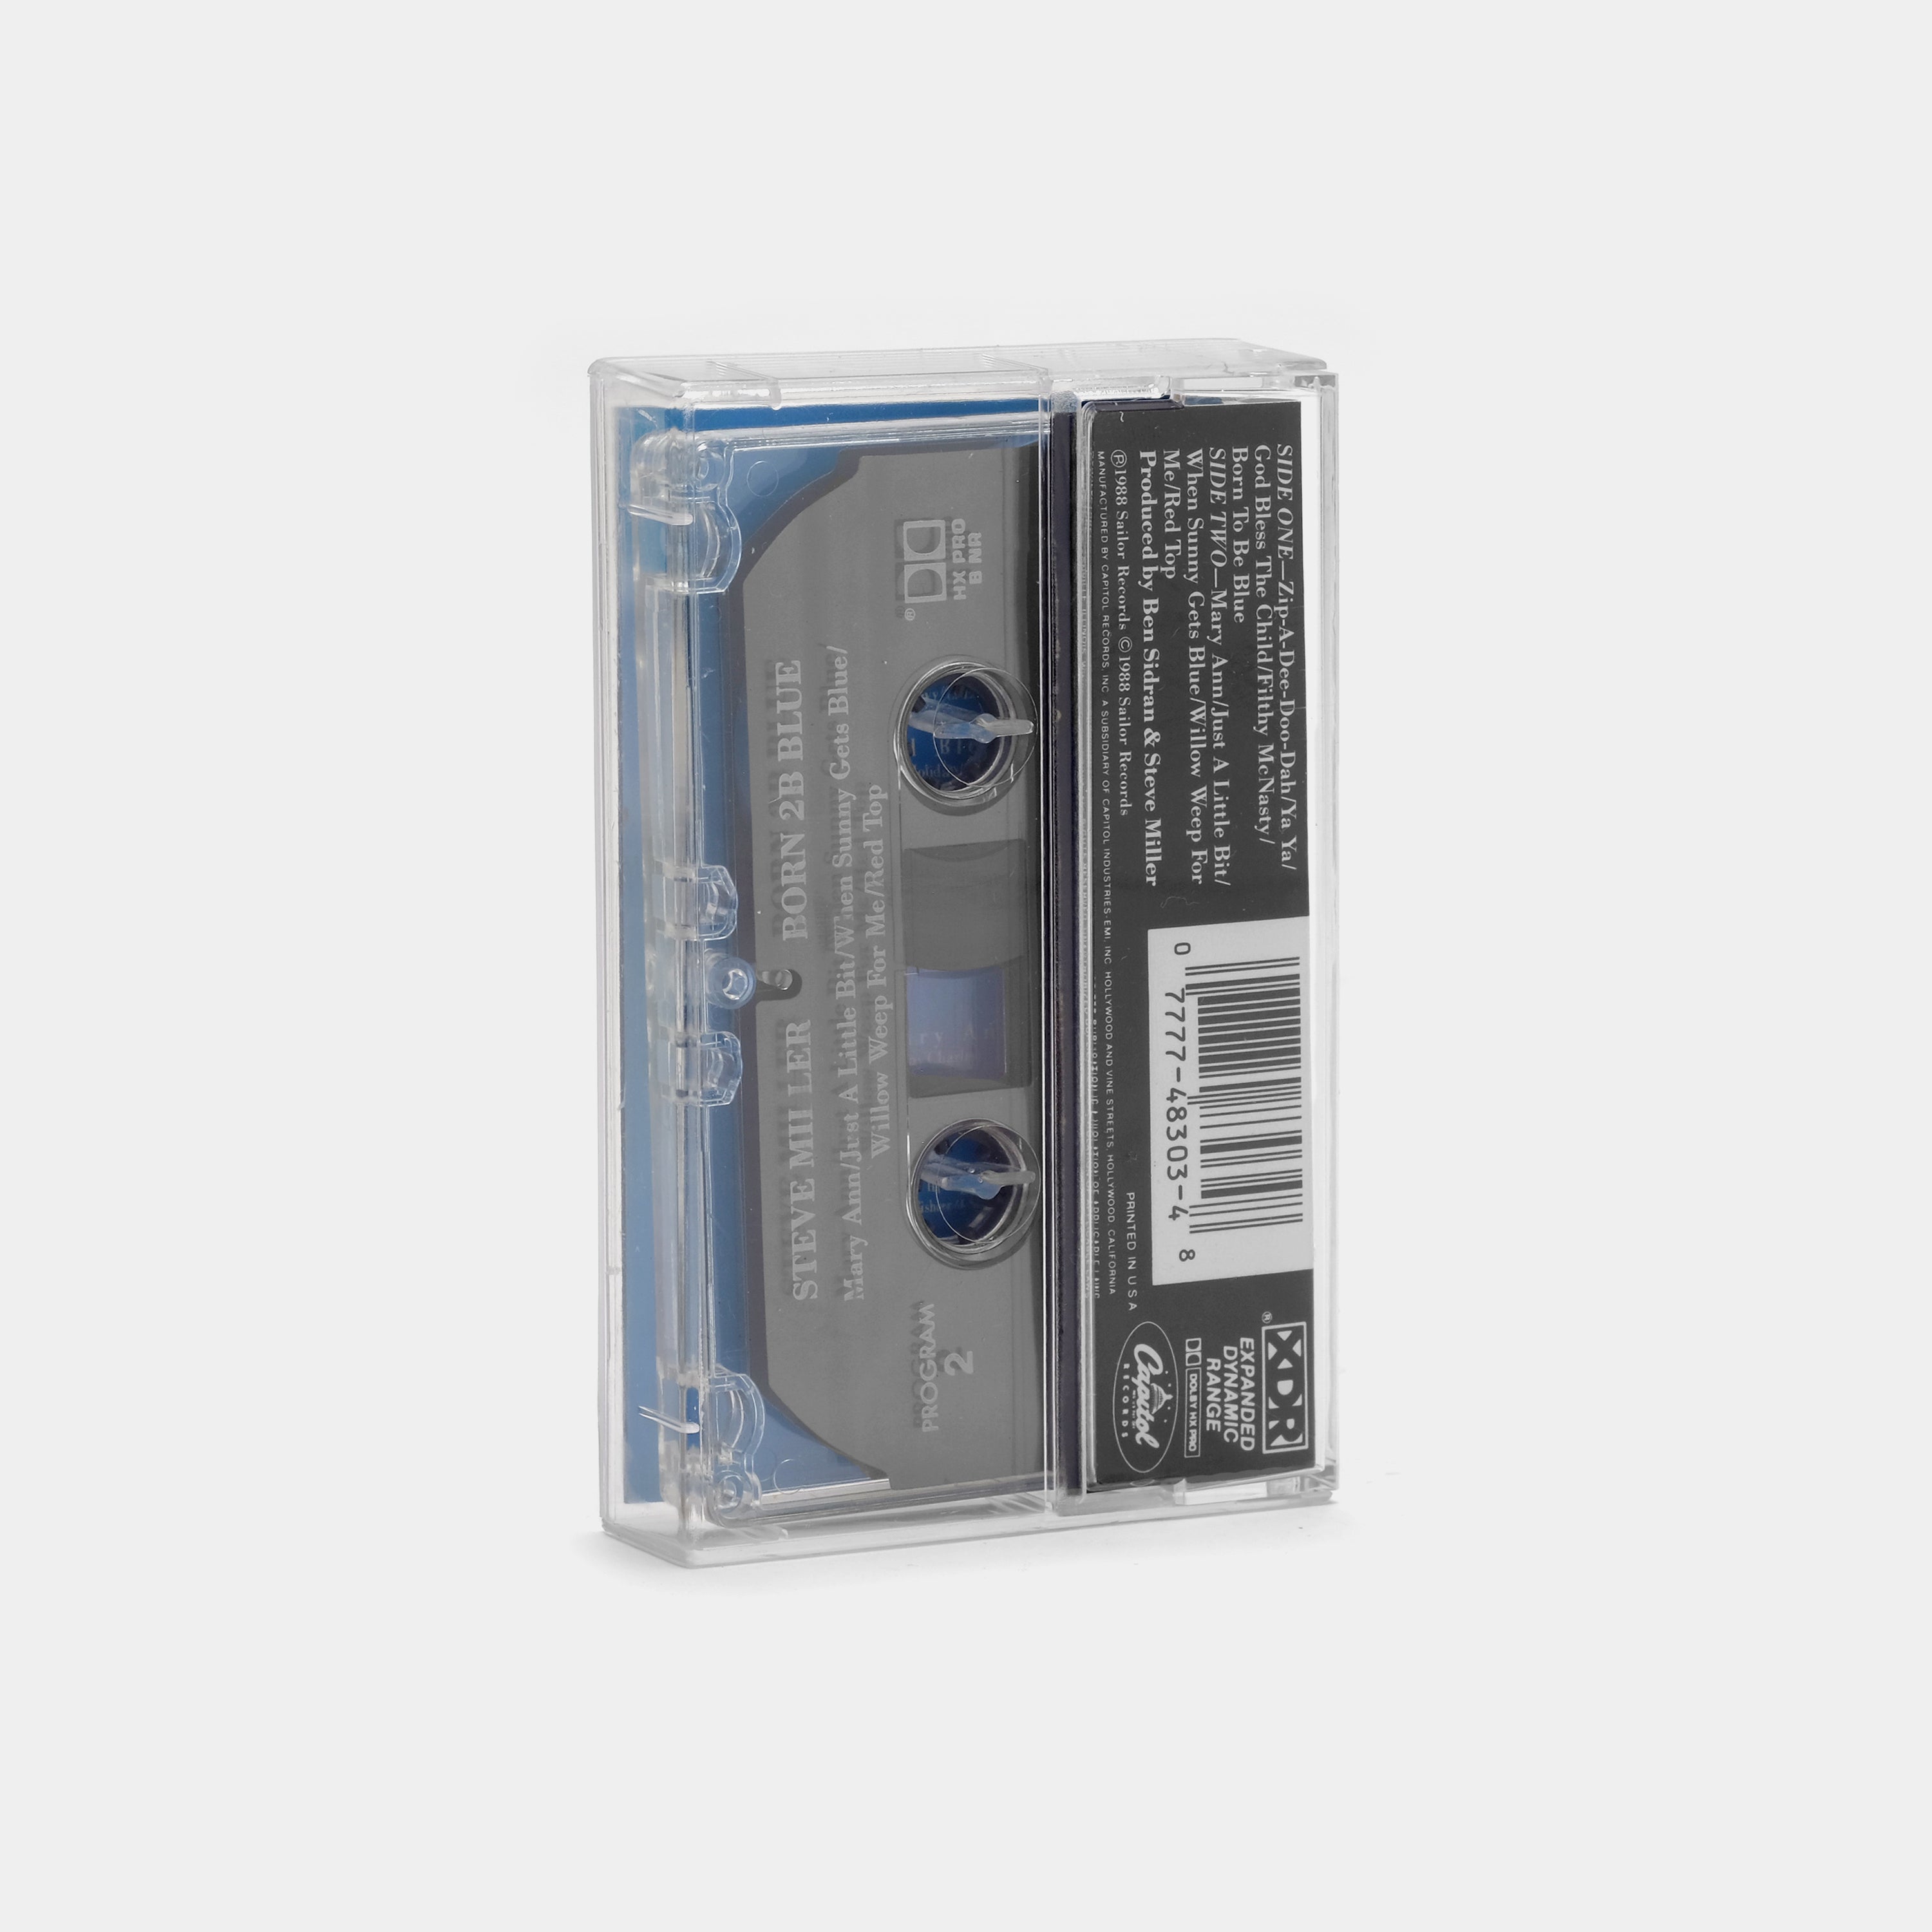 Steve Miller - Born 2B Blue Cassette Tape